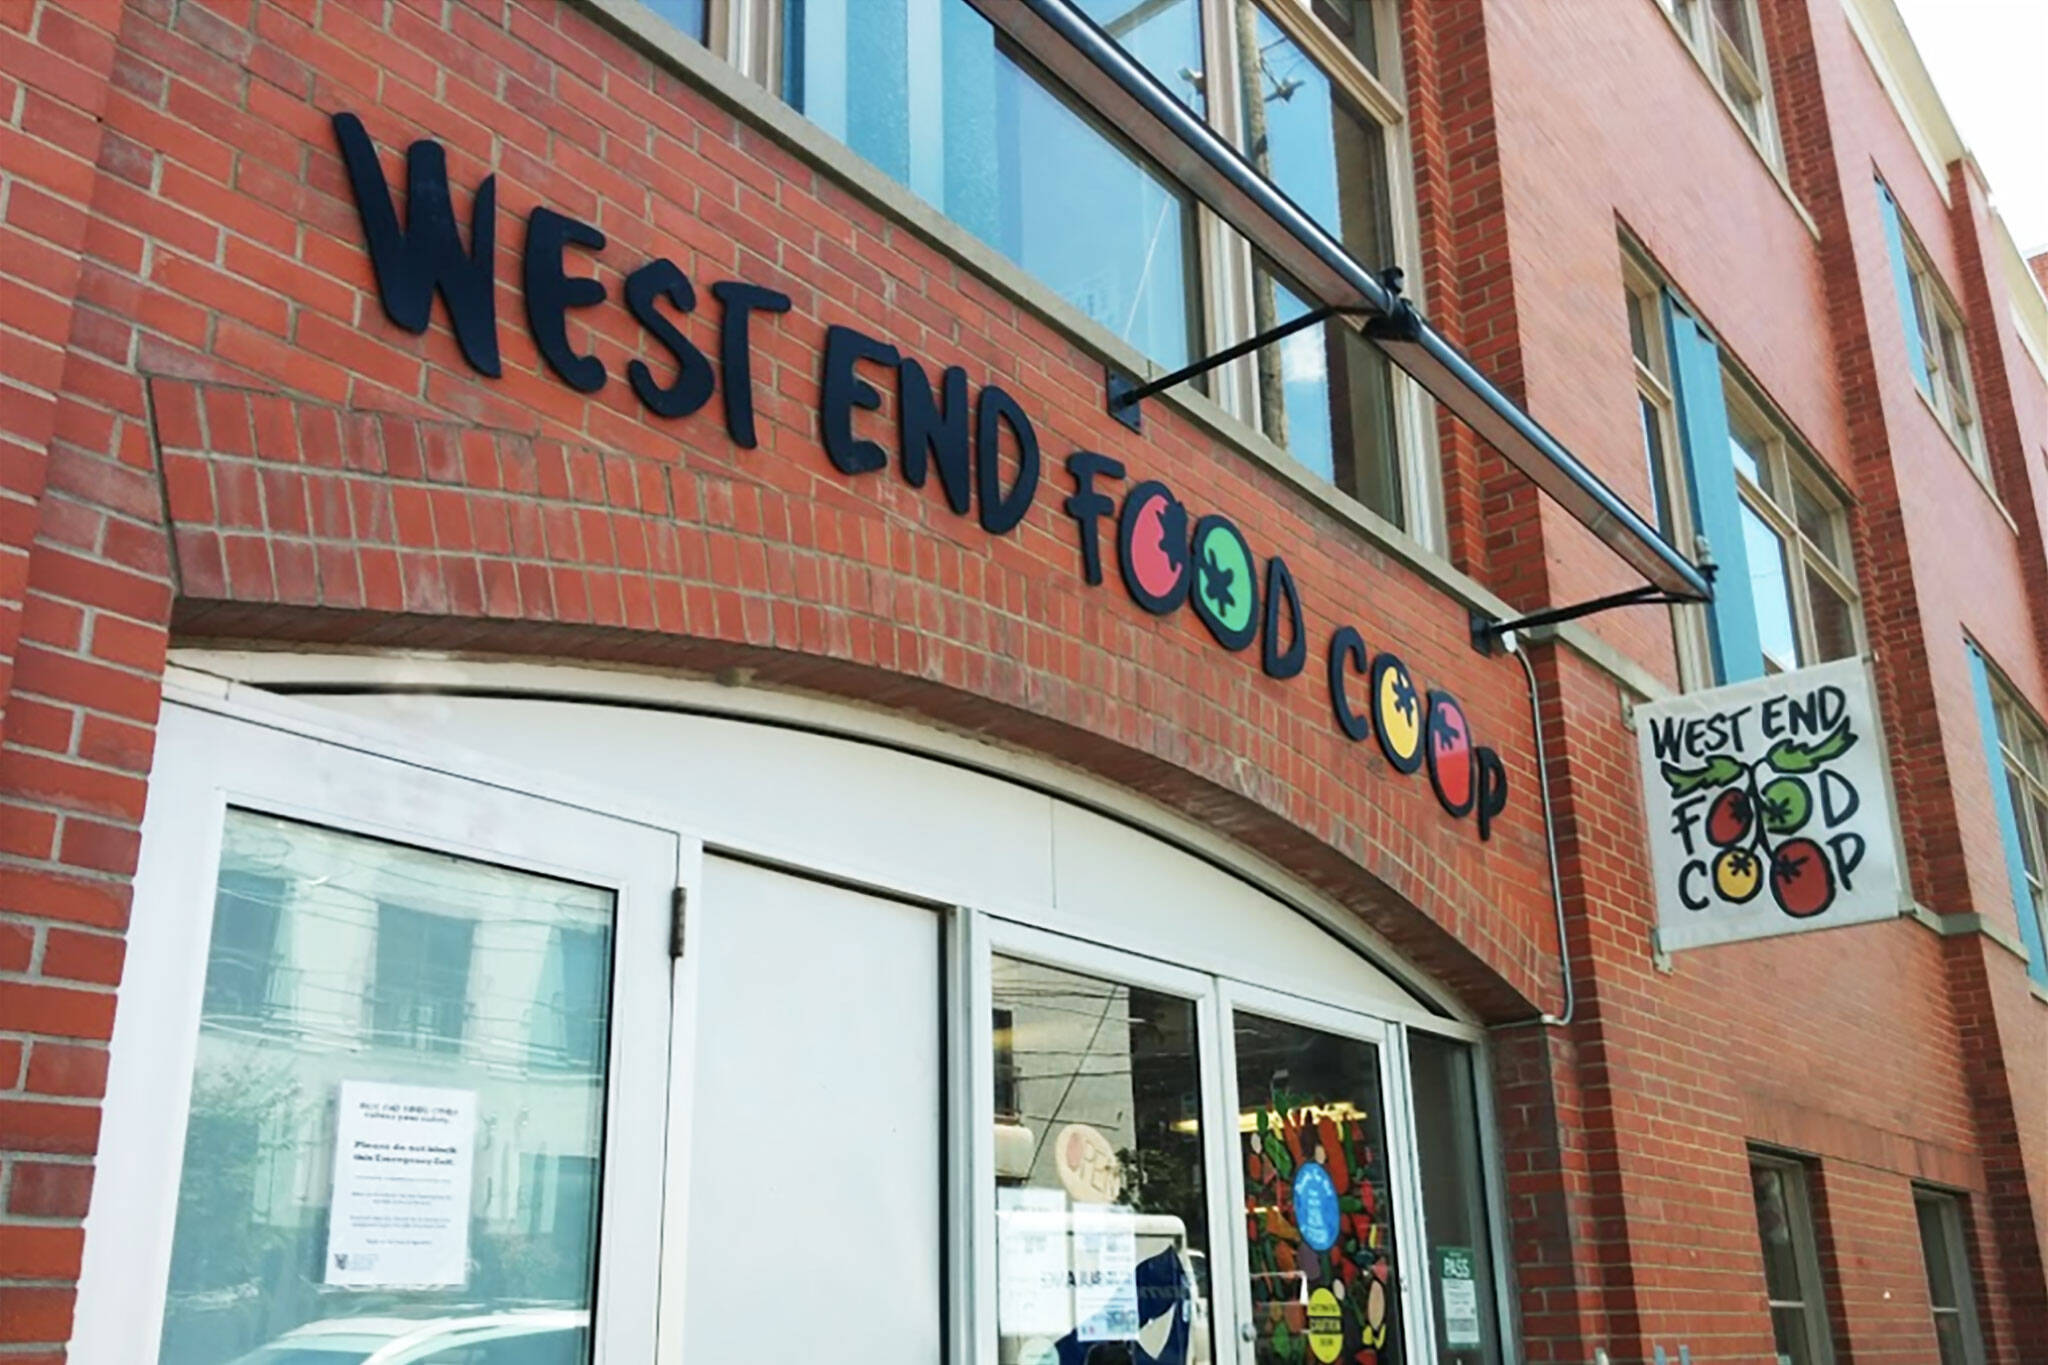 west end food coop